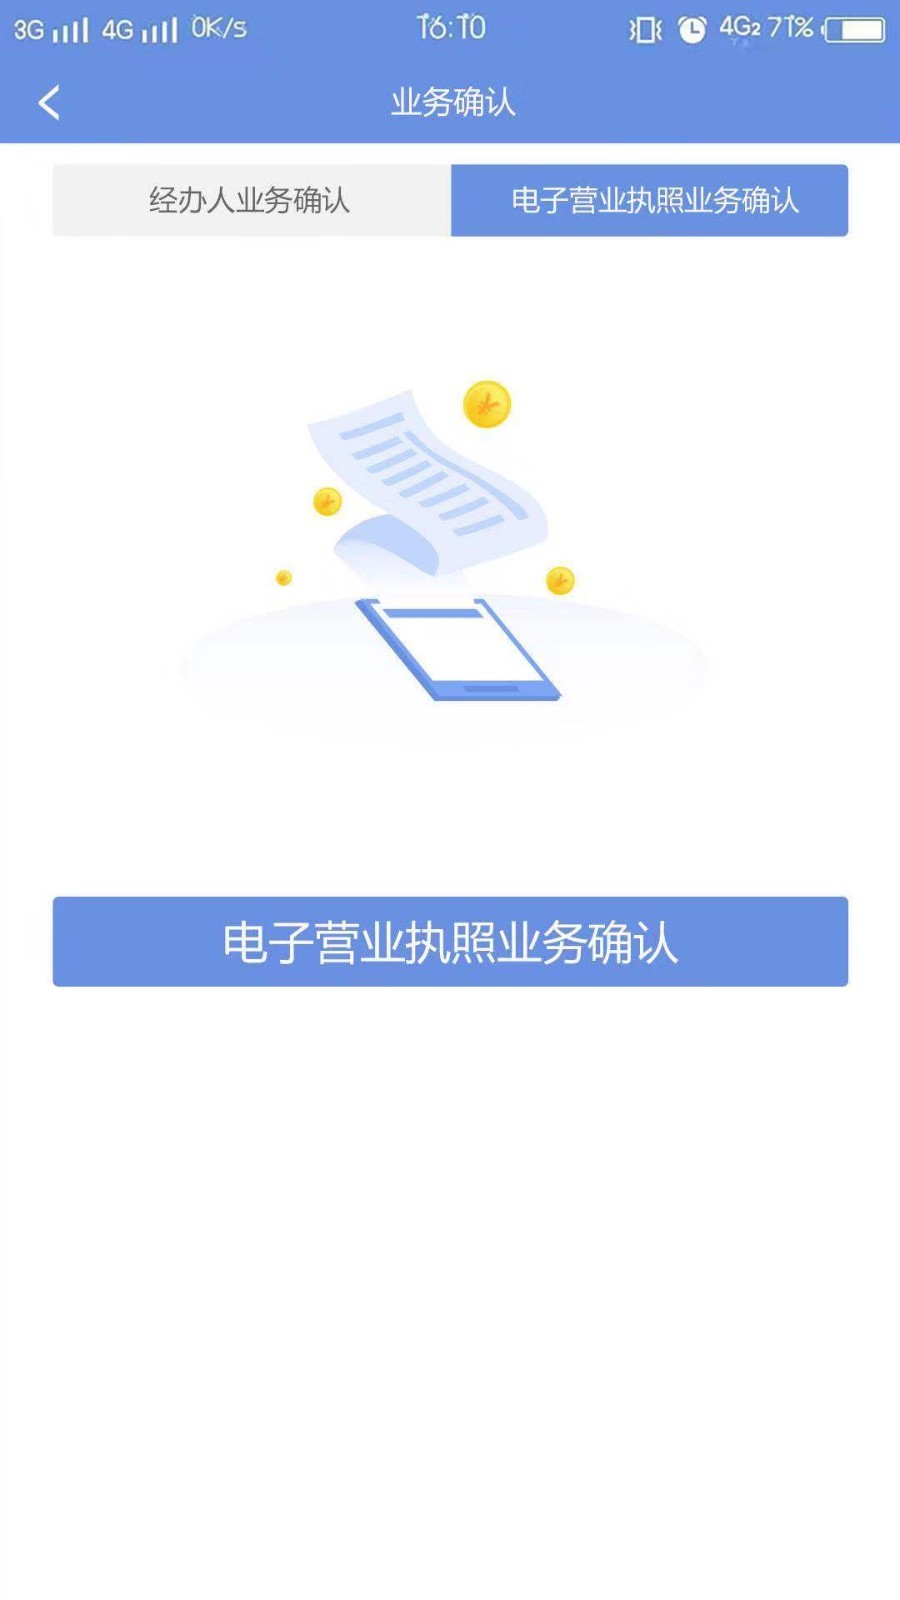 北京工商网上服务平台-01